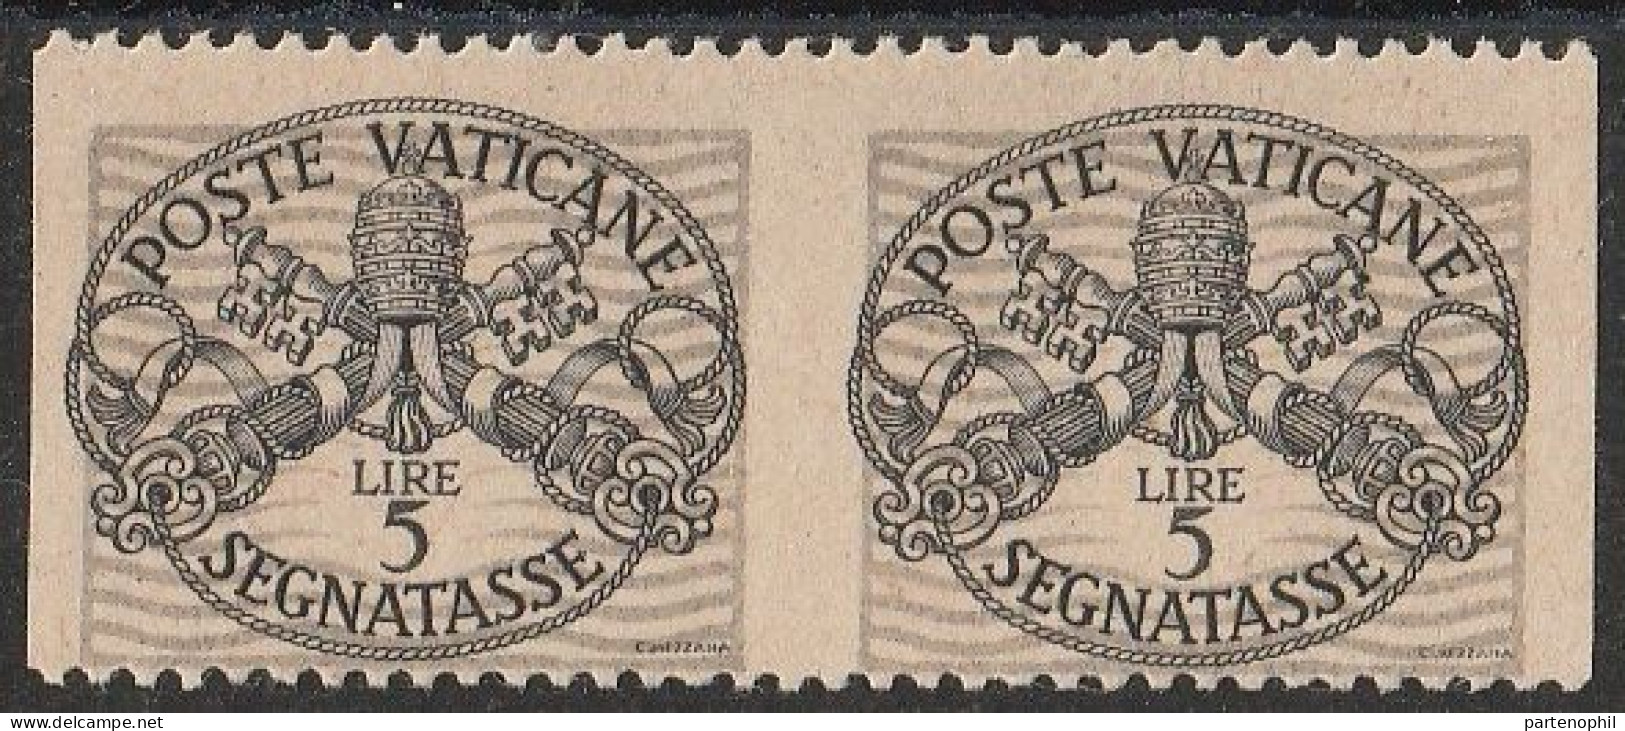 Lotto 424 Vaticano Varietà 1946 - Segnatasse Coppia Verticale Del L. 5 Non Dentellata N. 12c. MH - Variétés & Curiosités